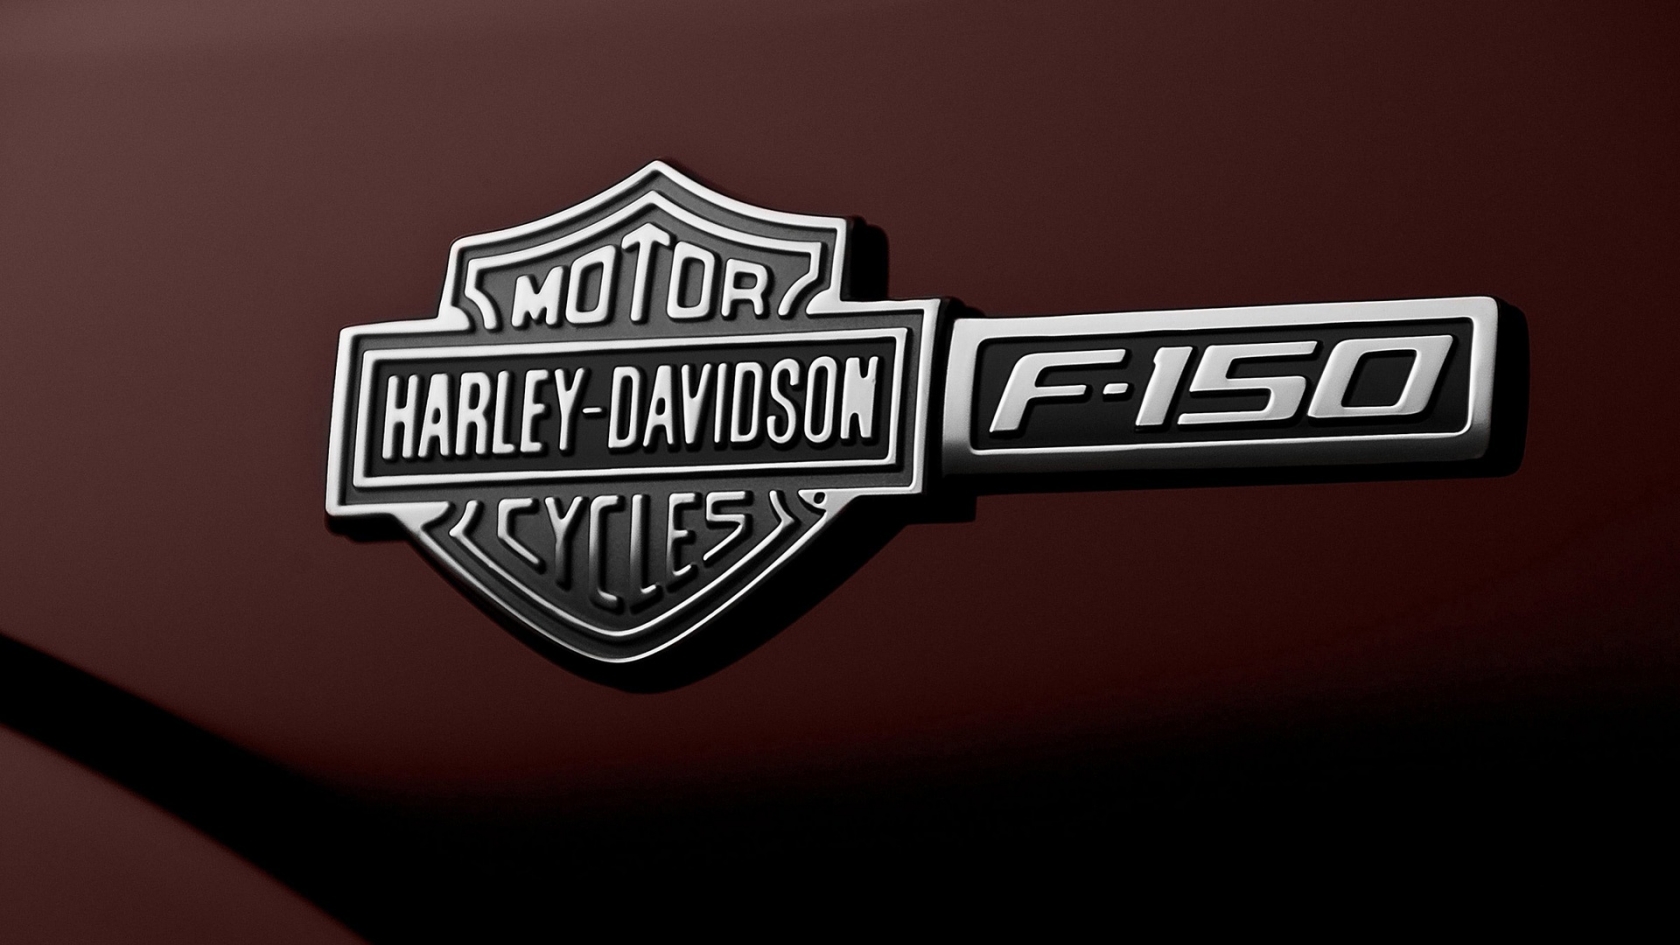 Ford F-150 Harley-Davidson Emblem for 1680 x 945 HDTV resolution